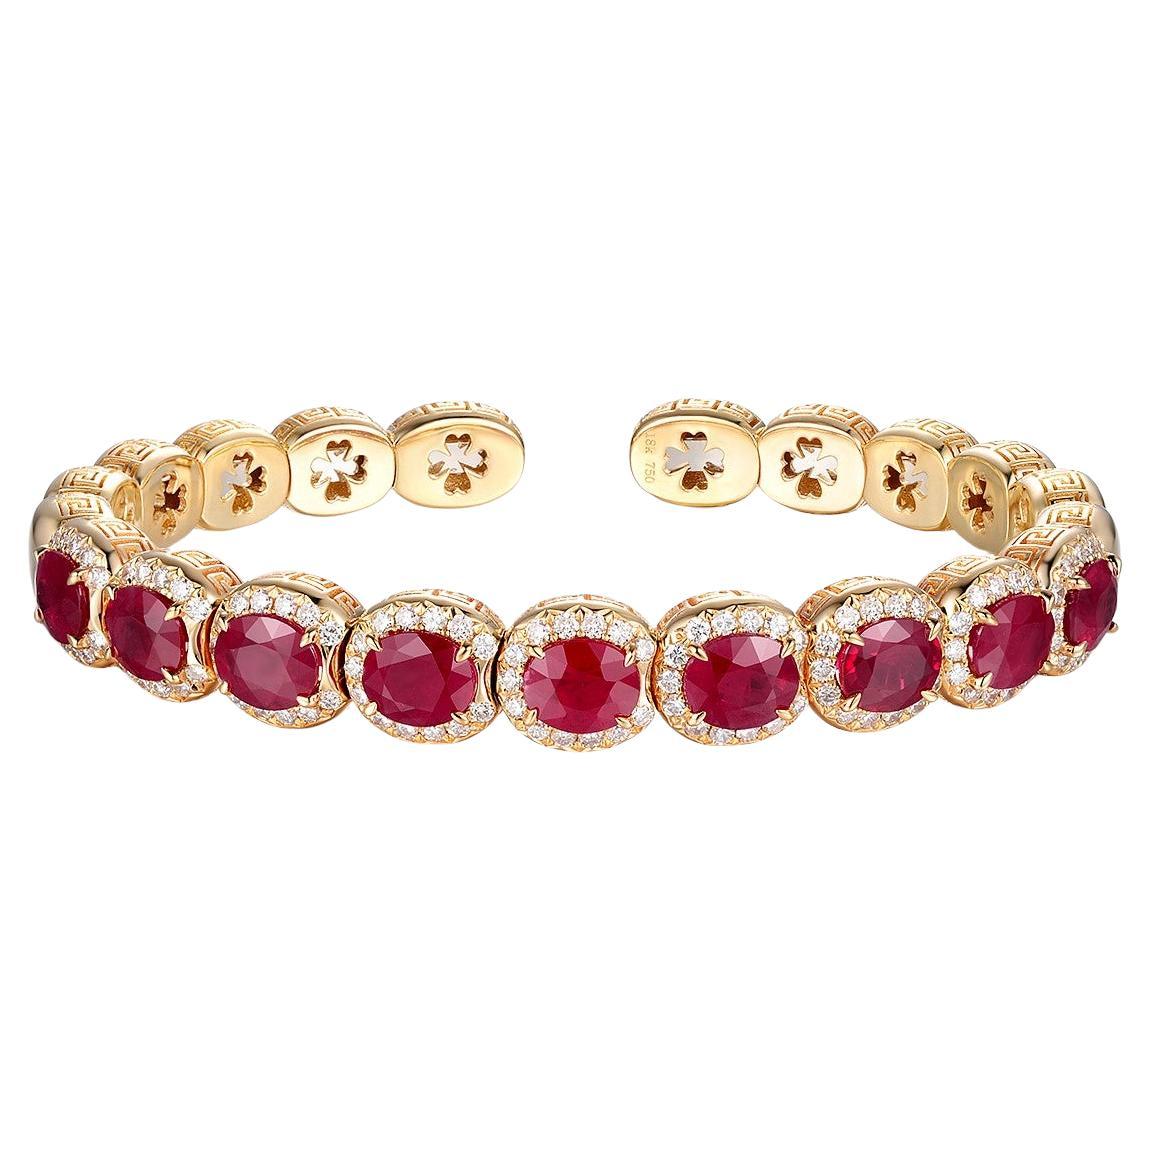 Wir präsentieren das atemberaubende Rubin-Diamant-Stahlarmband, das jetzt auch als offene Manschette für mehr Komfort und Vielseitigkeit erhältlich ist. Dieses wunderschöne Armband aus hochwertigem 18-karätigem Gelbgold besteht aus 9 ovalen Rubinen